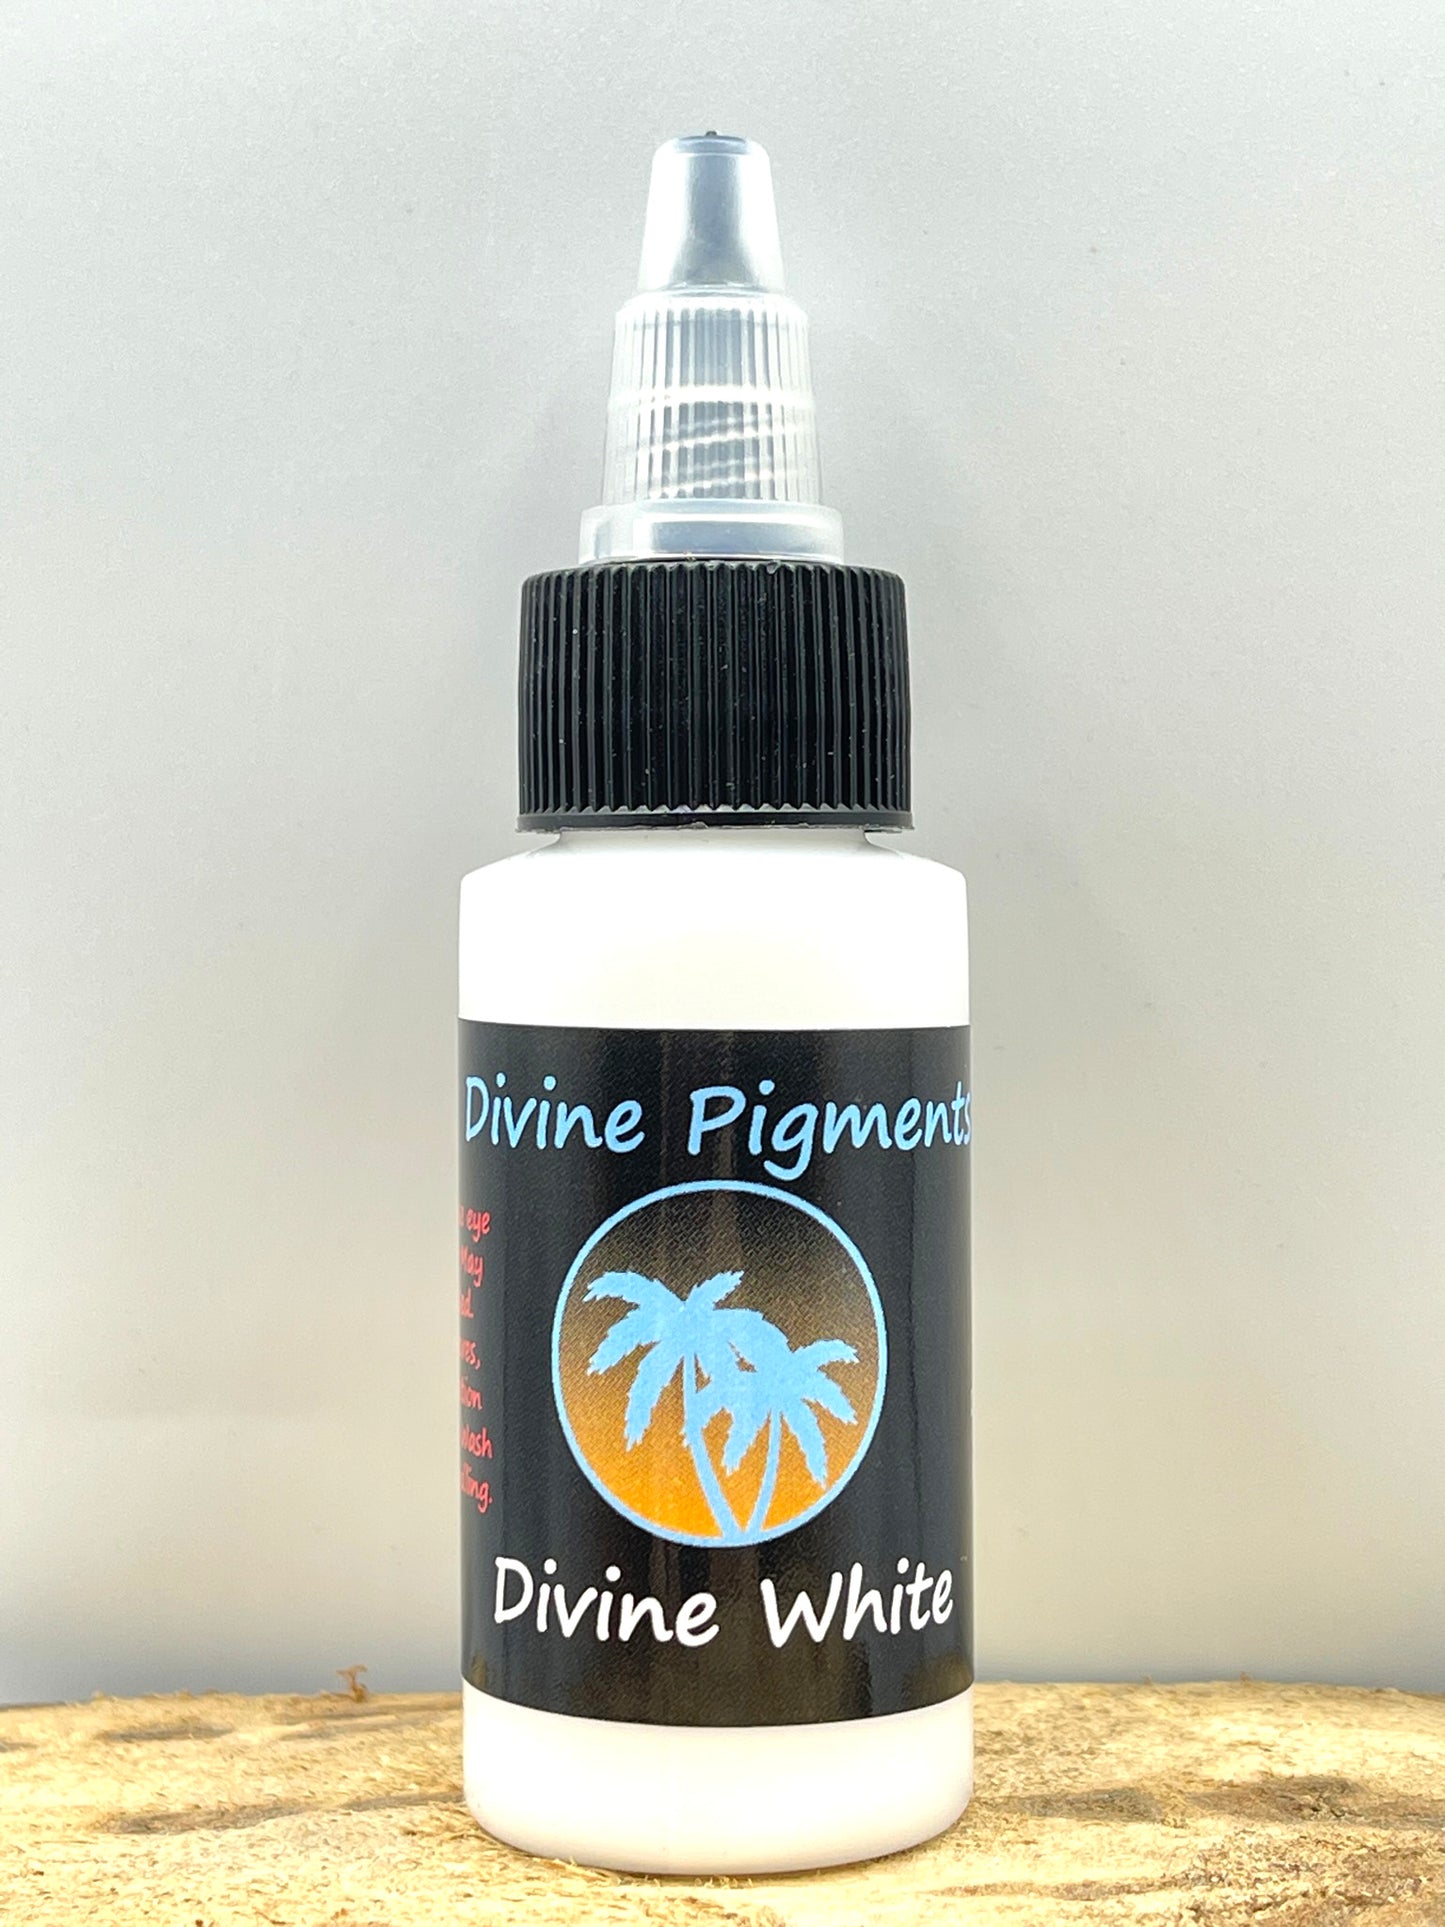 Divine Pigments - Divine White